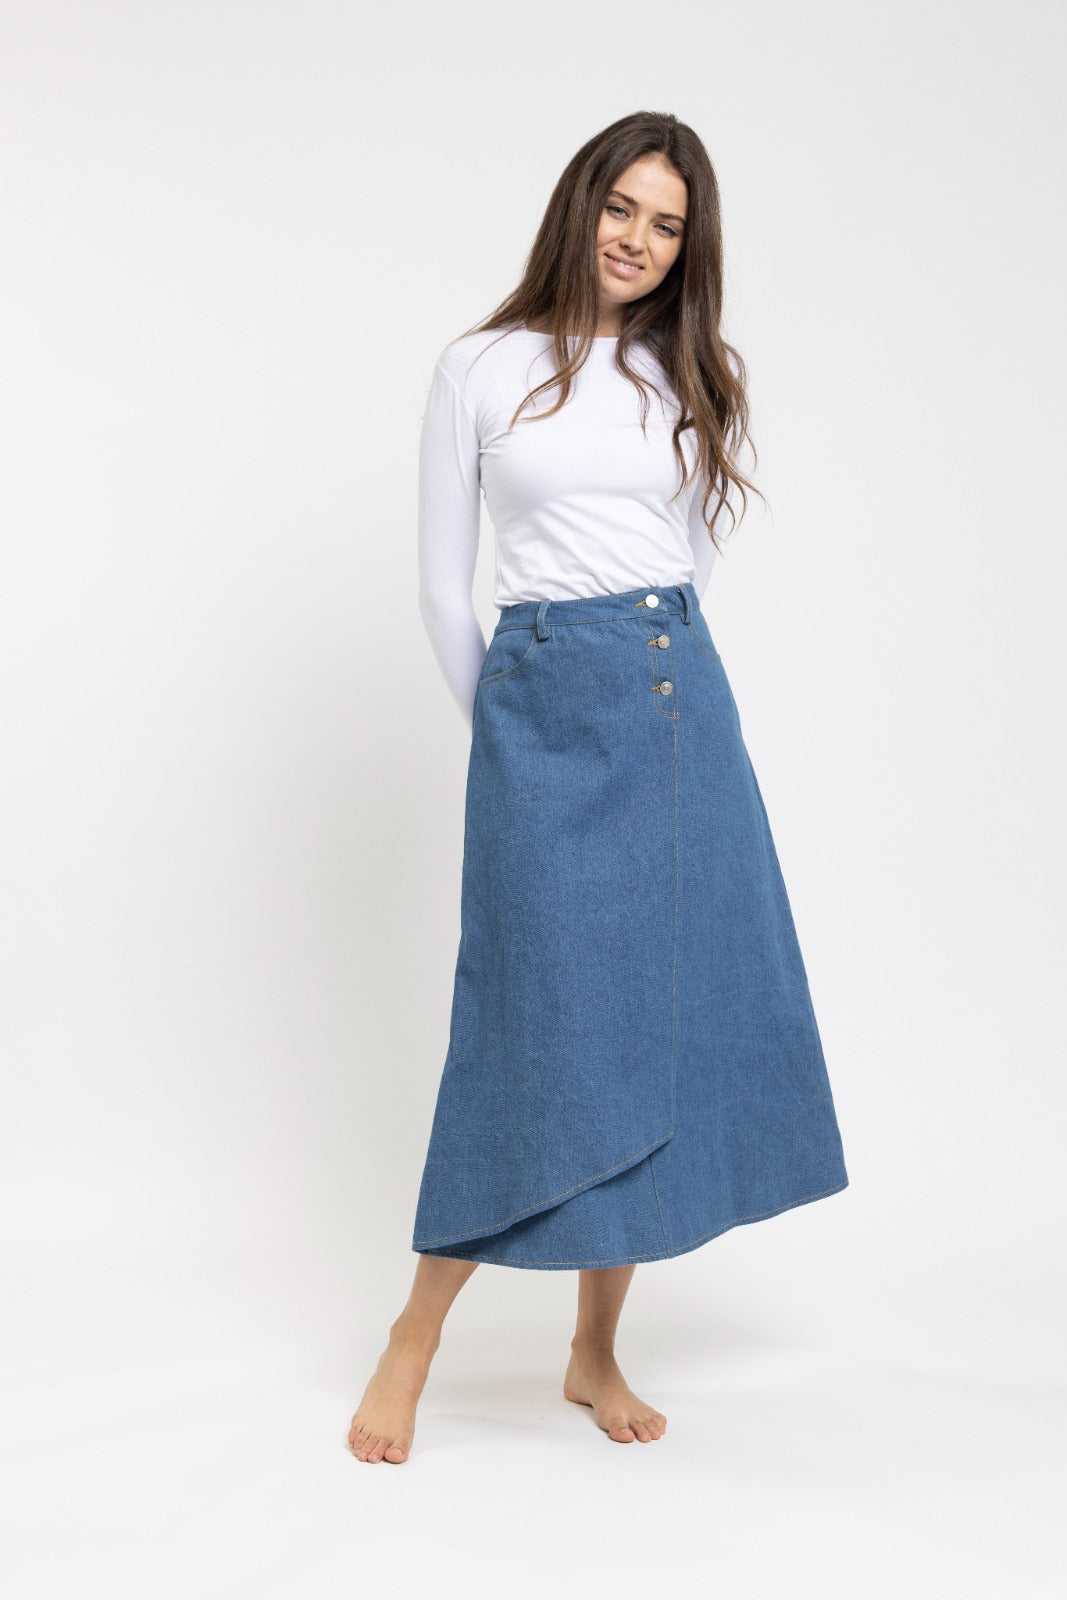 Danna Bella Blue Wrap Skirt with Buttons/Pockets TNS23501-A